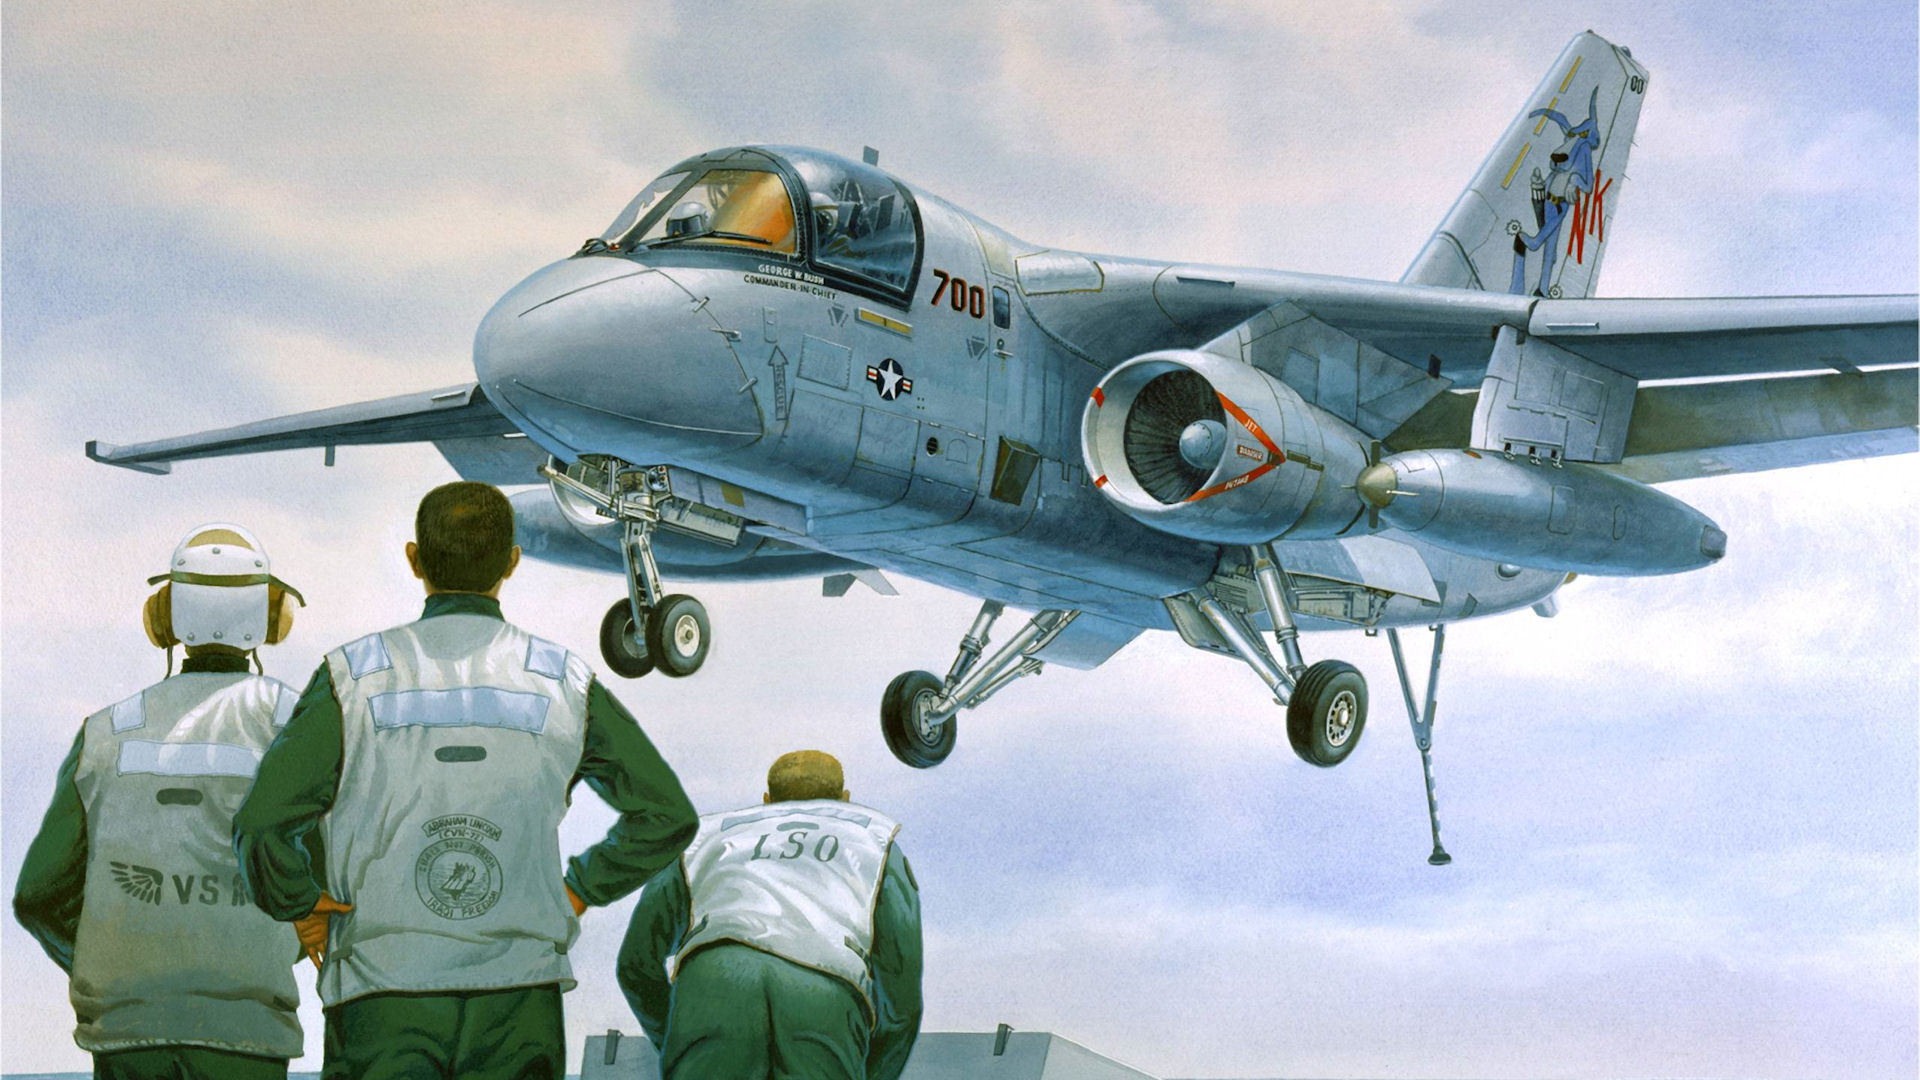 Militares vuelo de las aeronaves exquisitos pintura #7 - 1920x1080